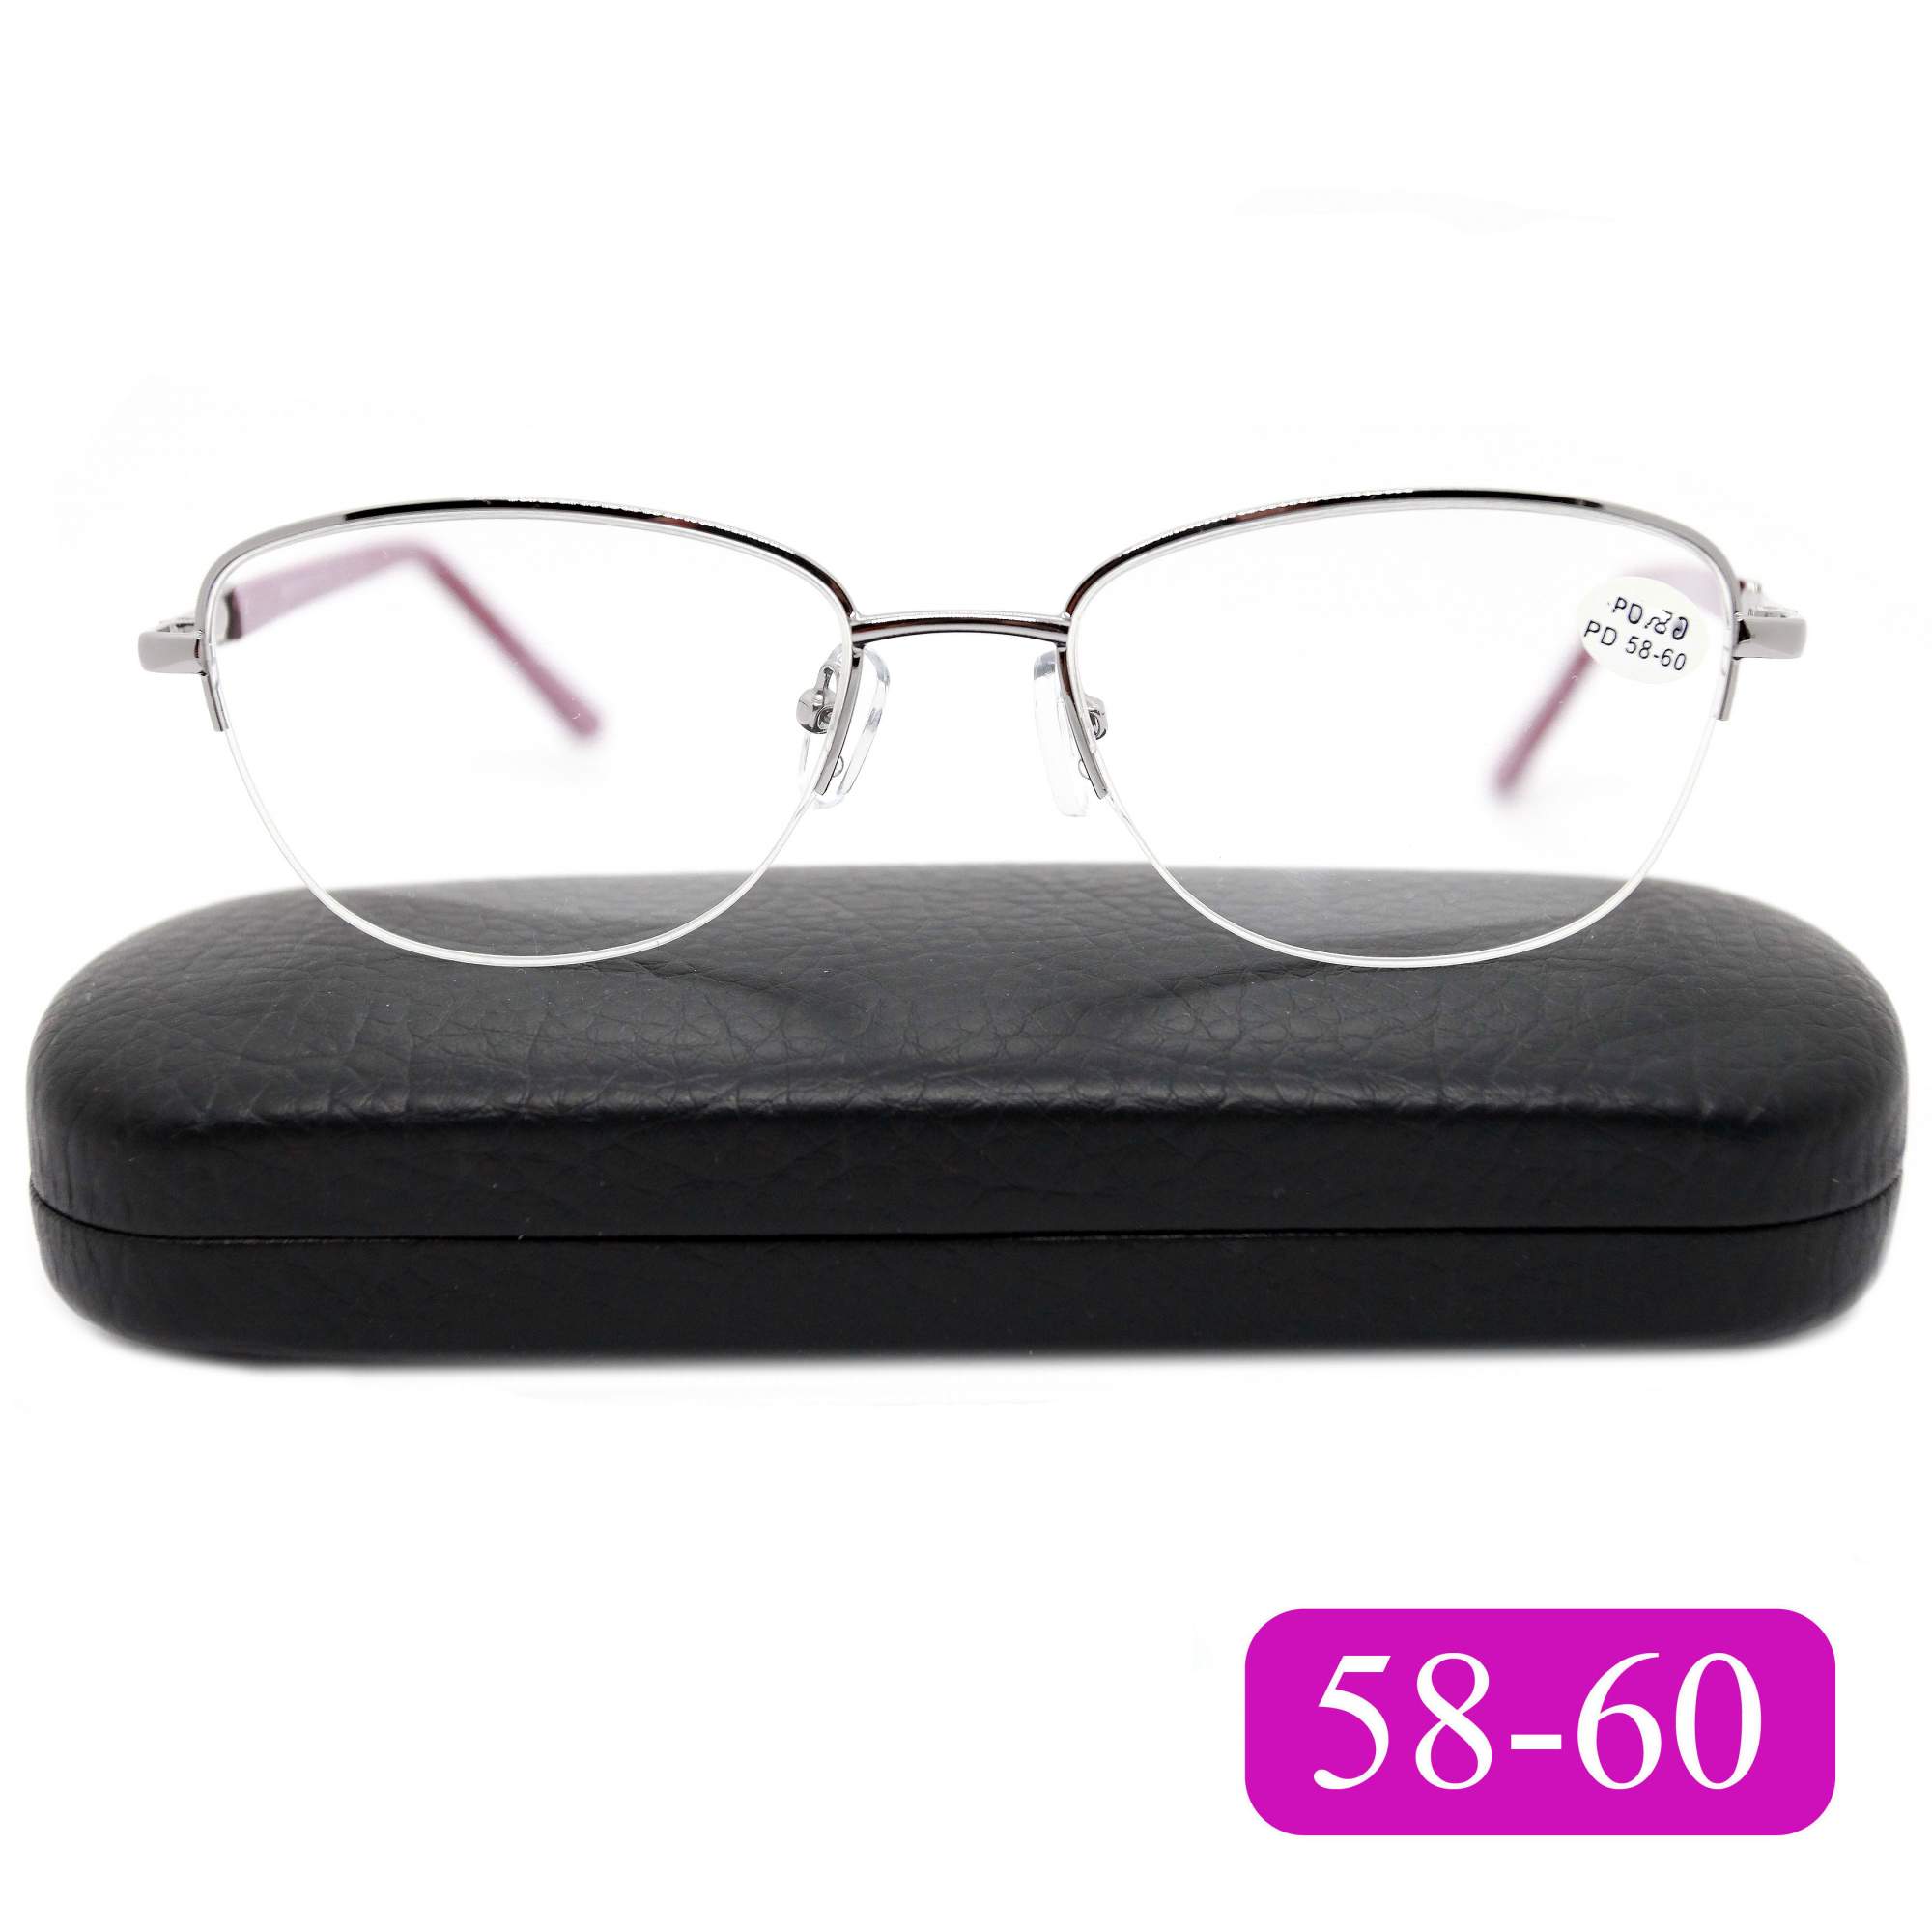 Готовые очки для зрения Fabia Monti 8920 -1.00, c футляром, цвет малиновый, РЦ 58-60